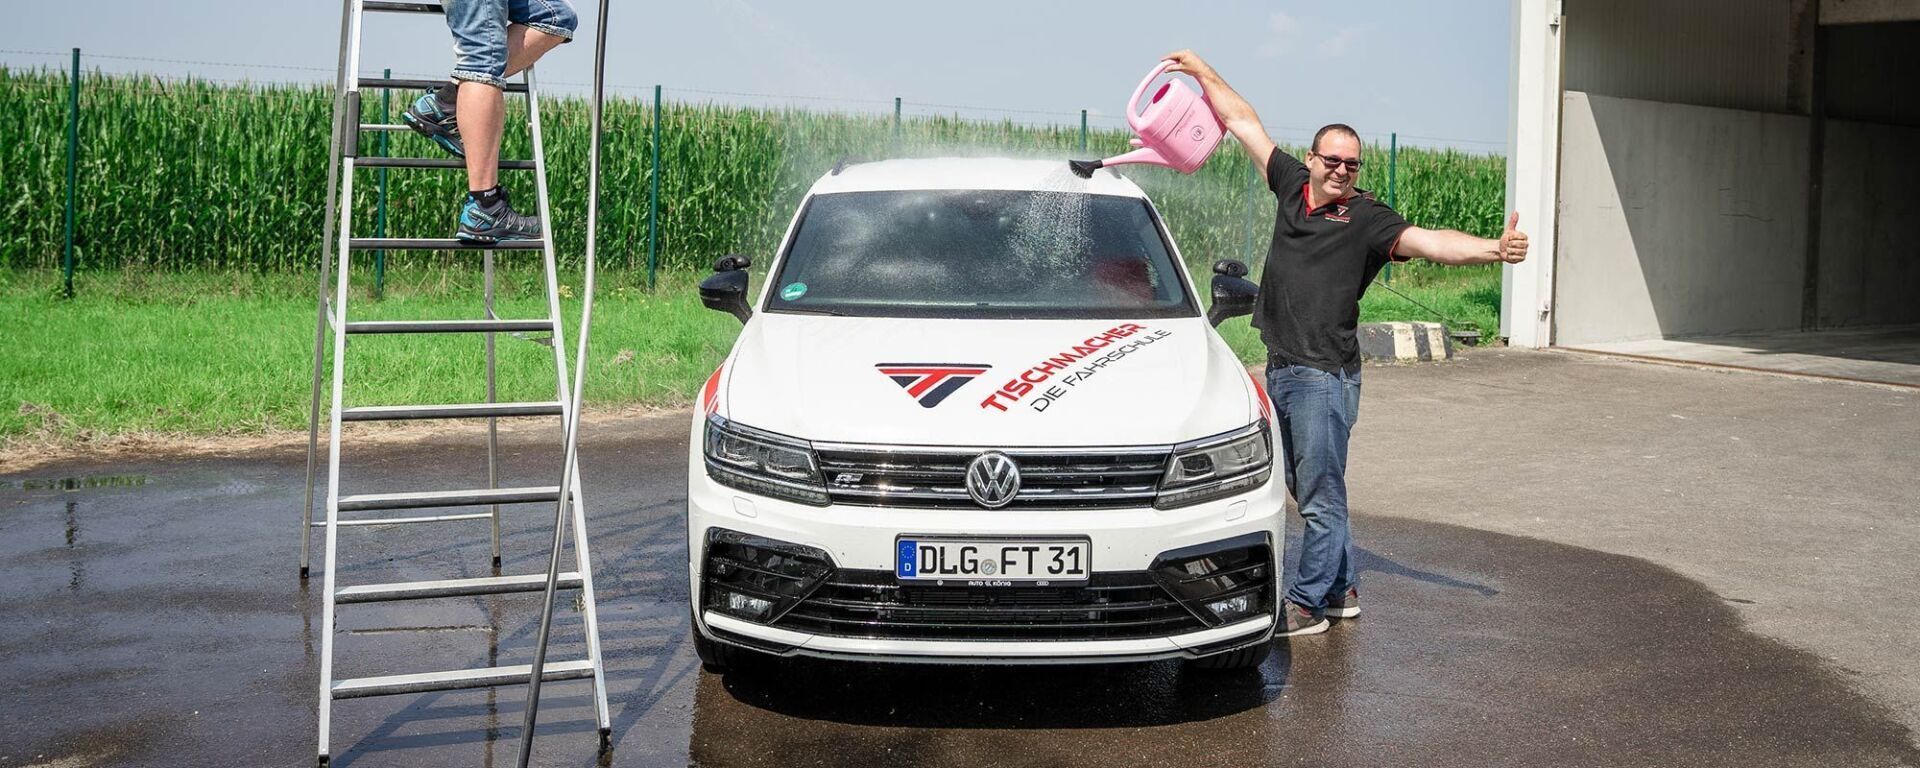 Fahrlehrer wäscht Fahrschulauto mit Giesßkanne